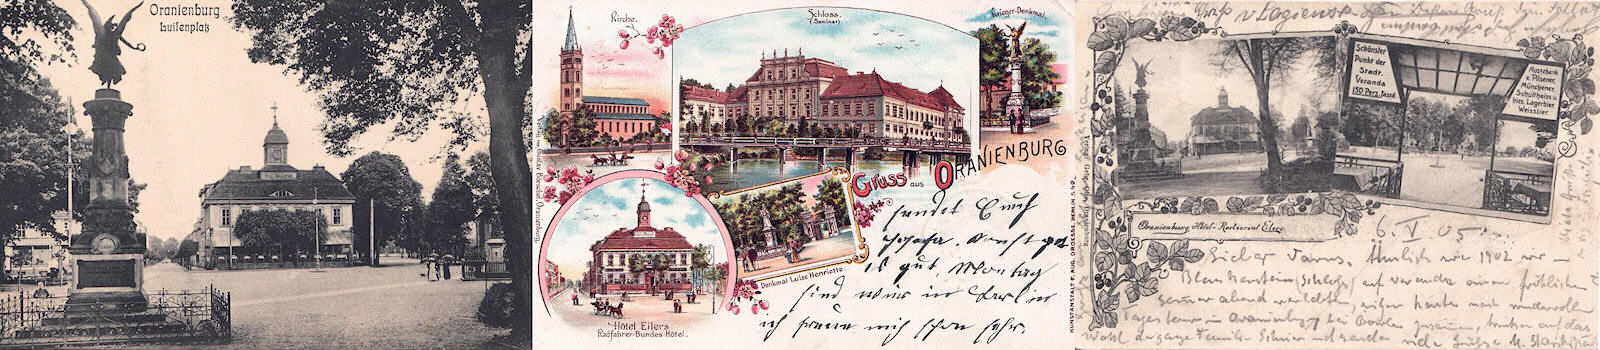 Das „Hotel Eilers“ auf historischen Postkarten (um 1900, Quelle: Privatbesitz Ney)